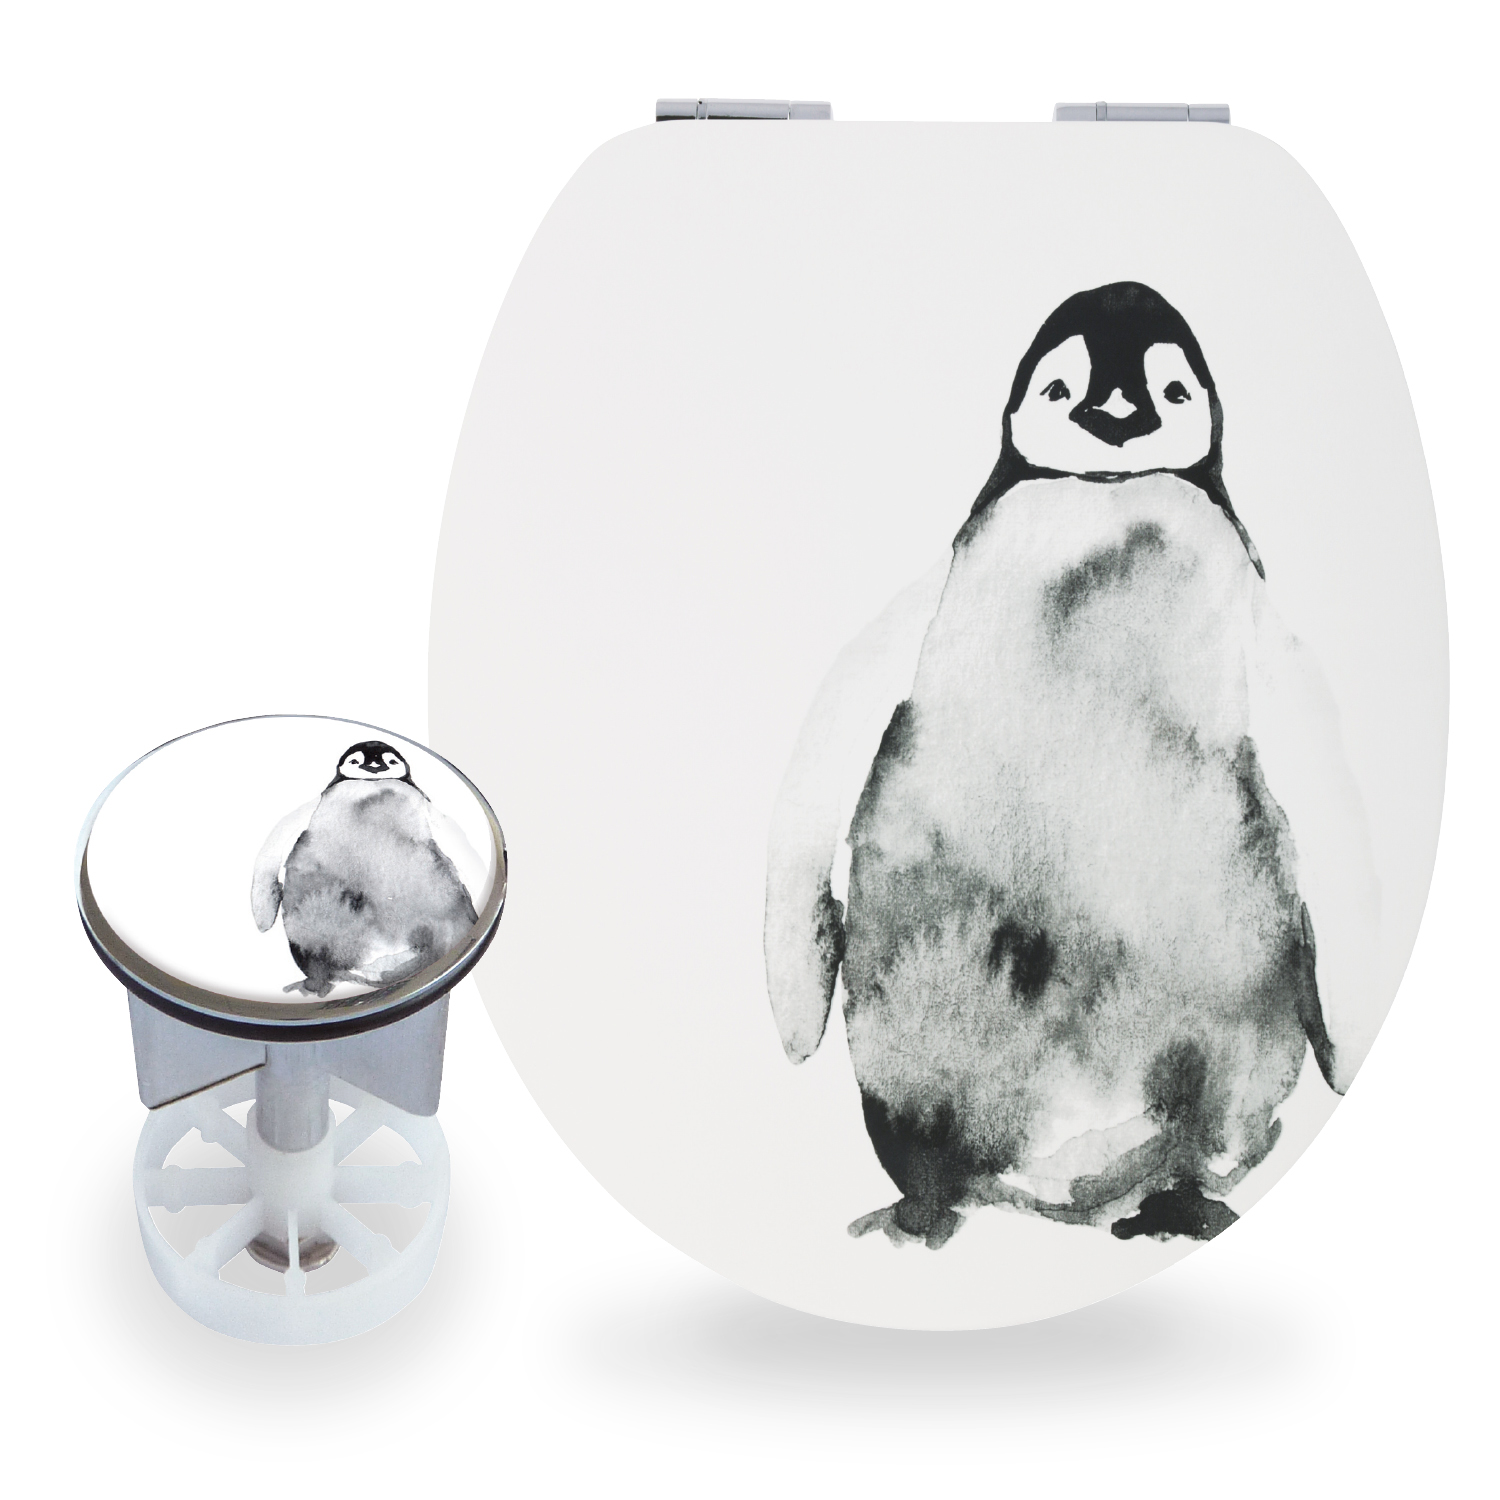 Sitzplatz® Motiv-Set Pinguin, Holzkern WC-Sitz mit Absenkautomatik, Excenterstopfen 38 - 40 mm